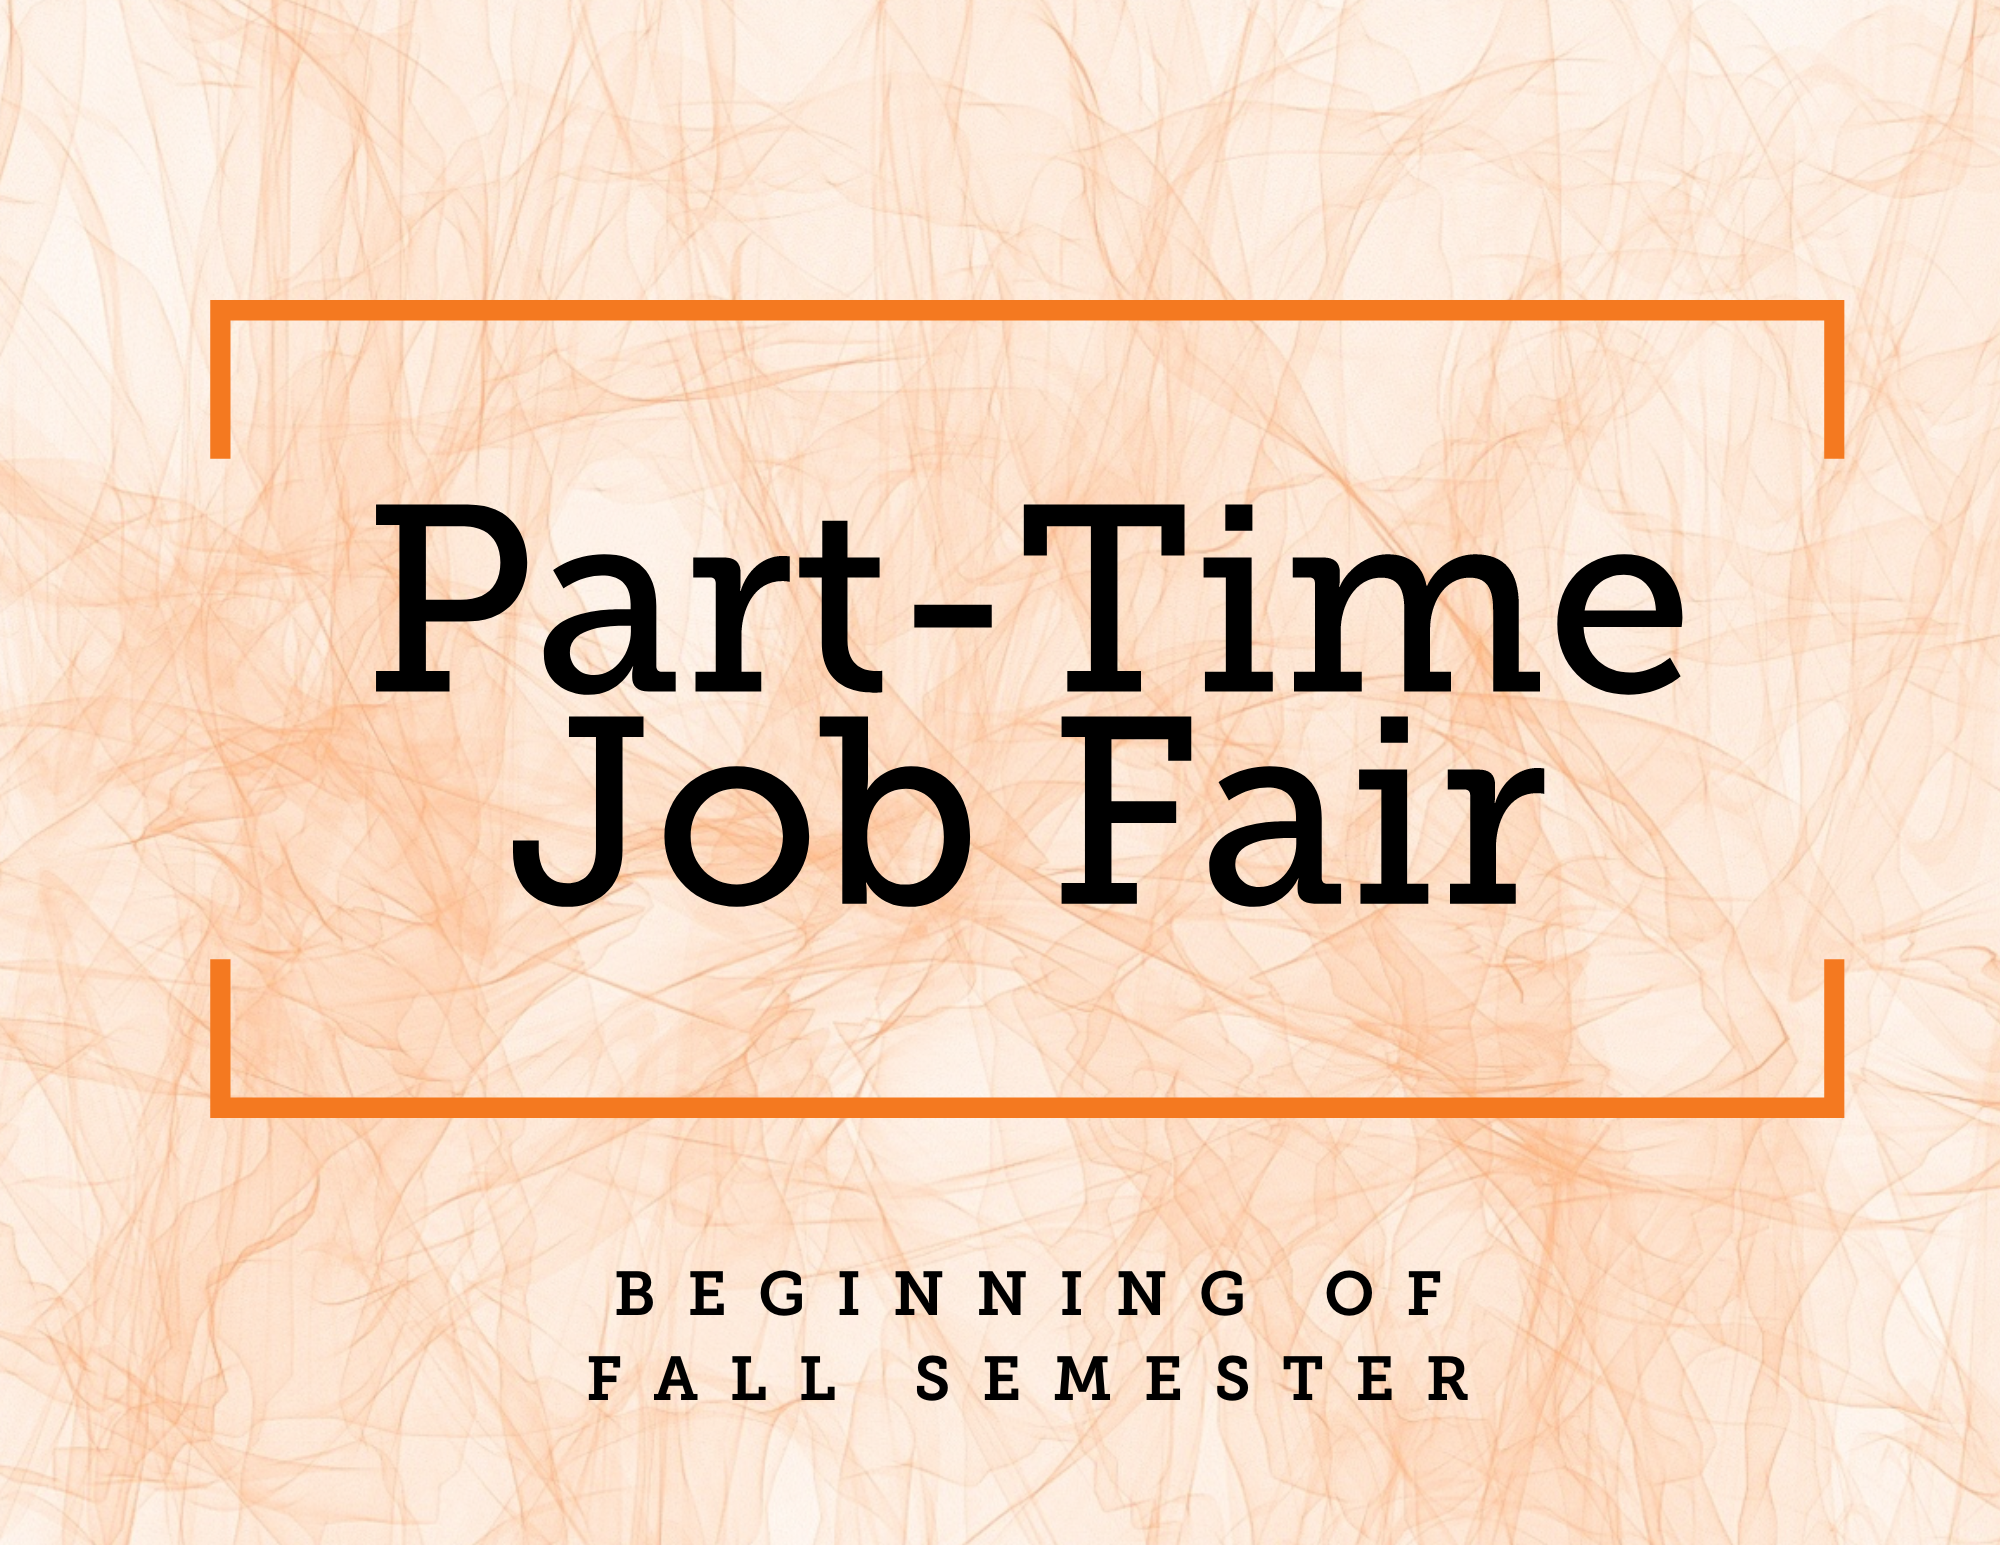 Part-time job fair - beginning of fall semester